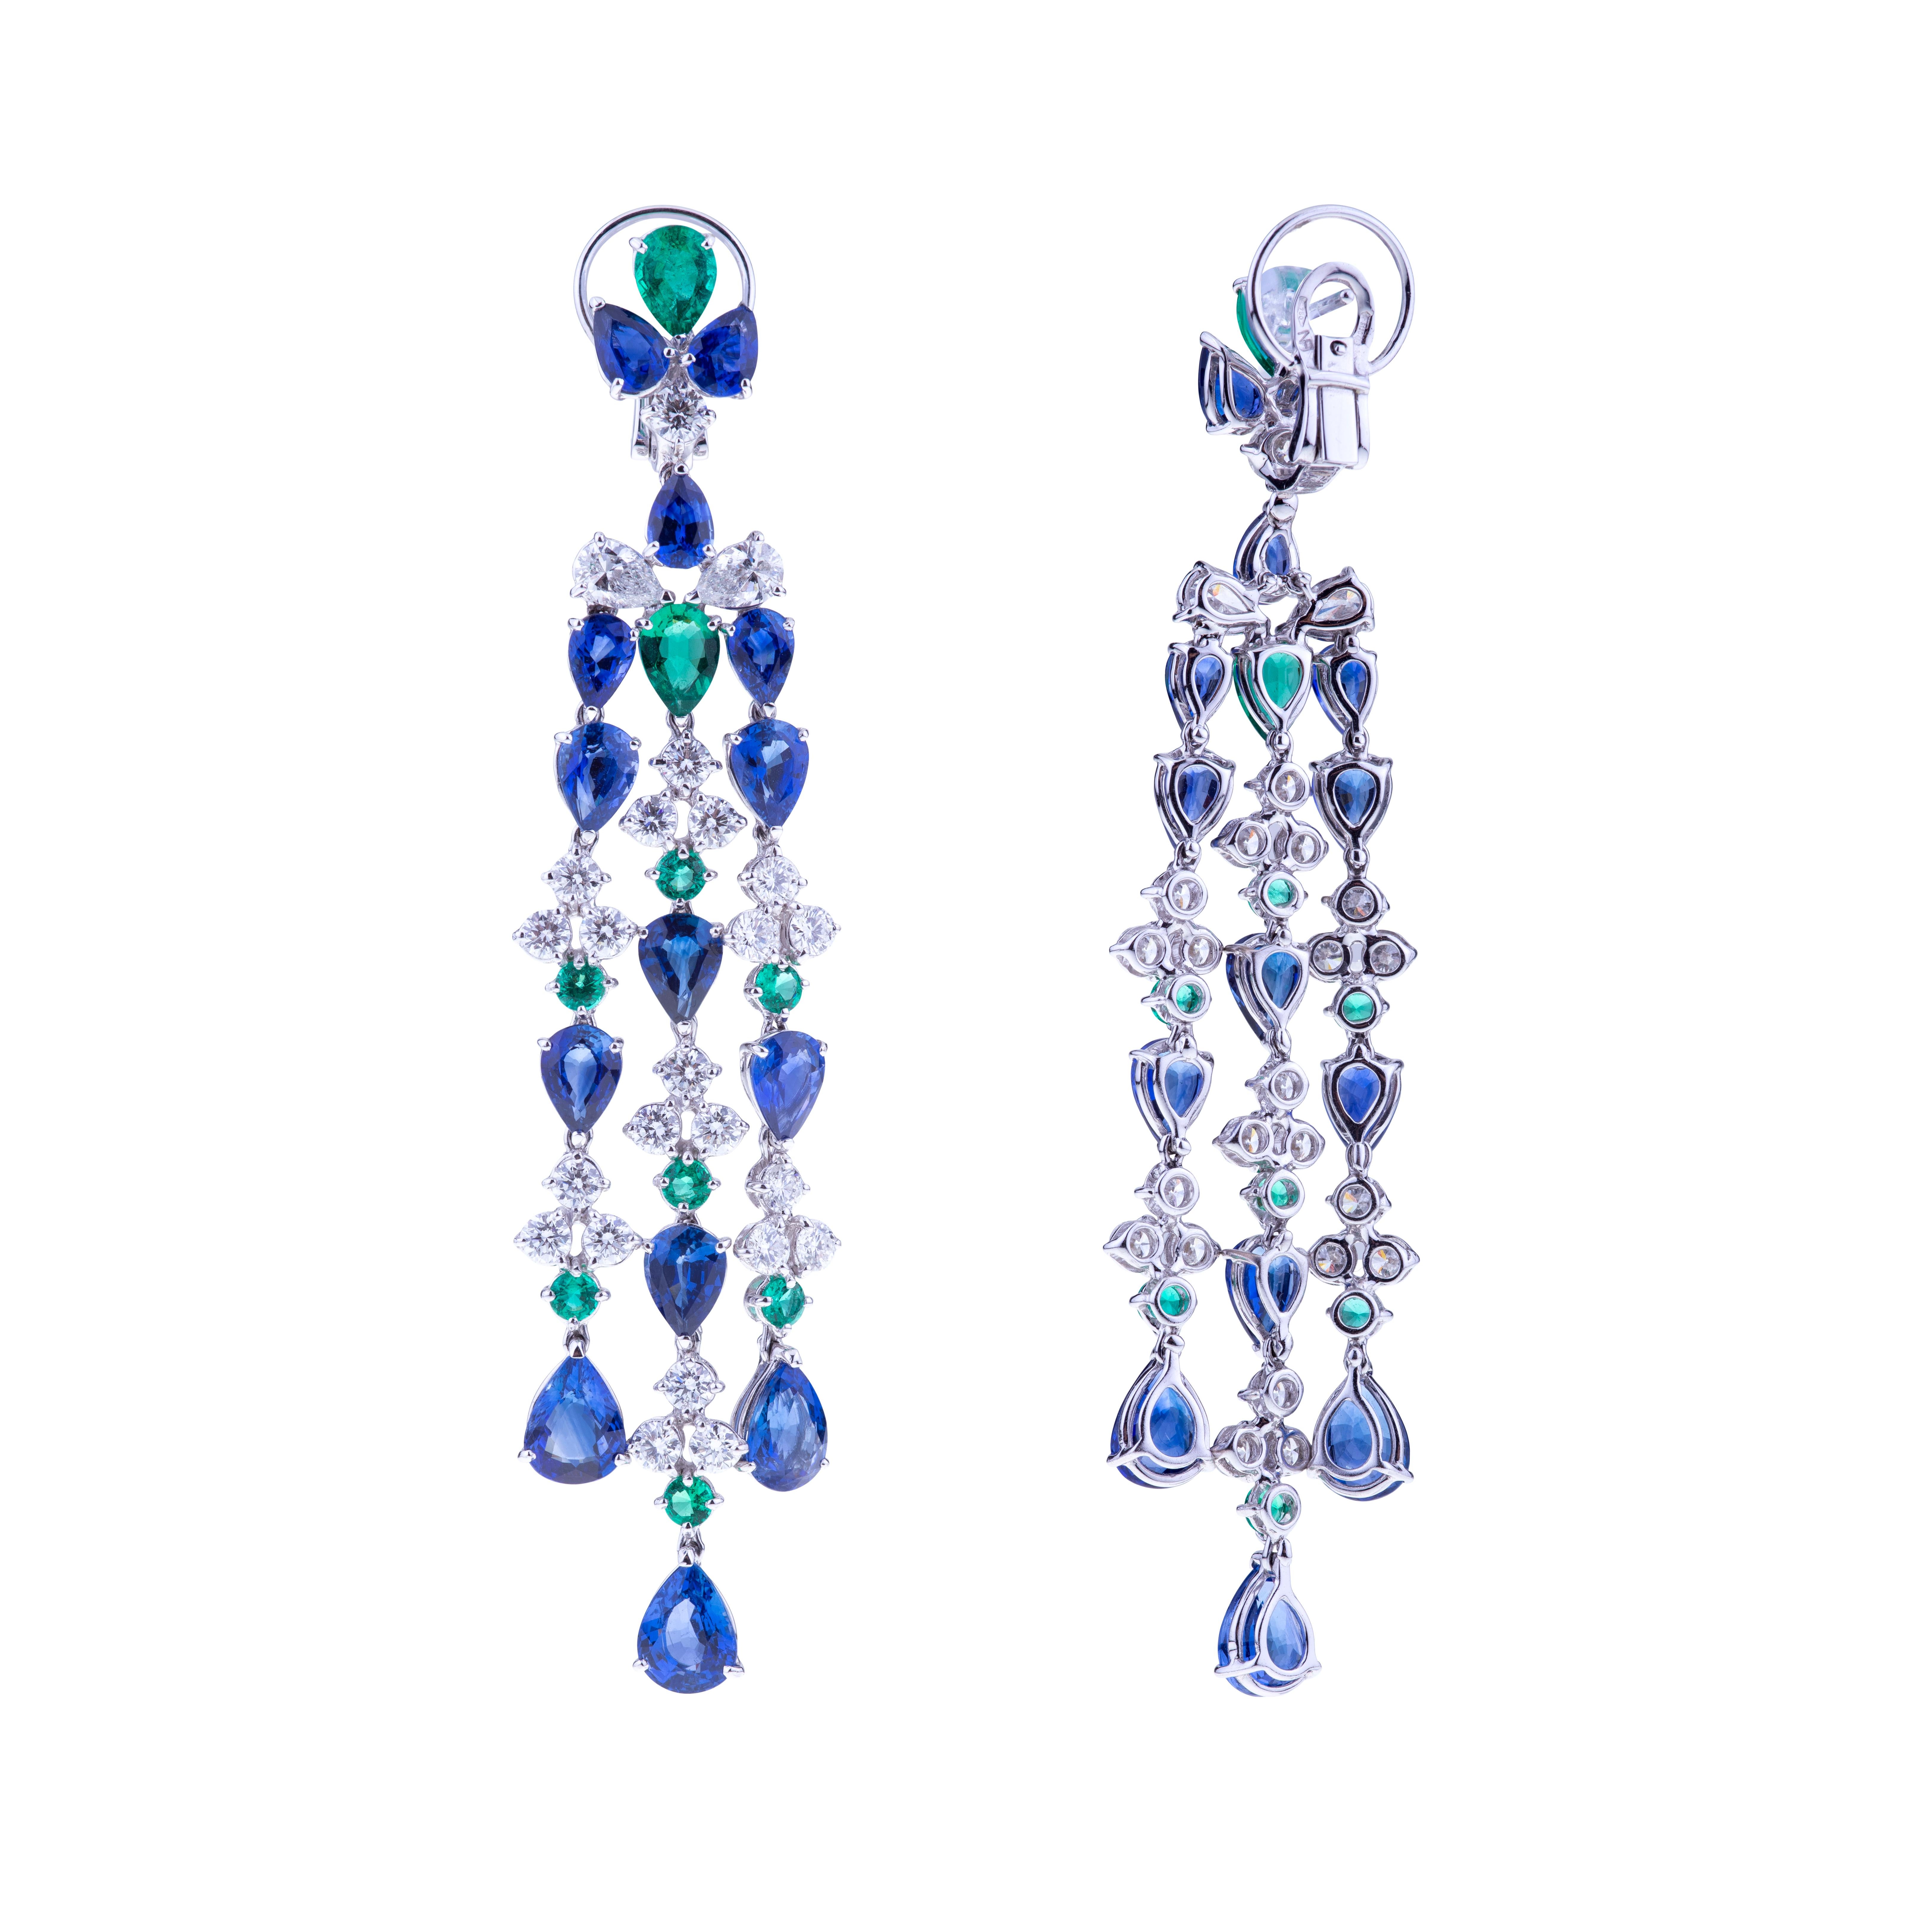 Kronleuchter-Ohrringe mit blauen Saphiren, Smaragden und Diamanten mit Weißgold. 
Die Steine sind in einem Kronleuchter-Ohrring mit drei Fäden aus Saphiren, Smaragden und Diamanten gefasst. Die Saphire wiegen insgesamt 22,12 Karat, gefasst in